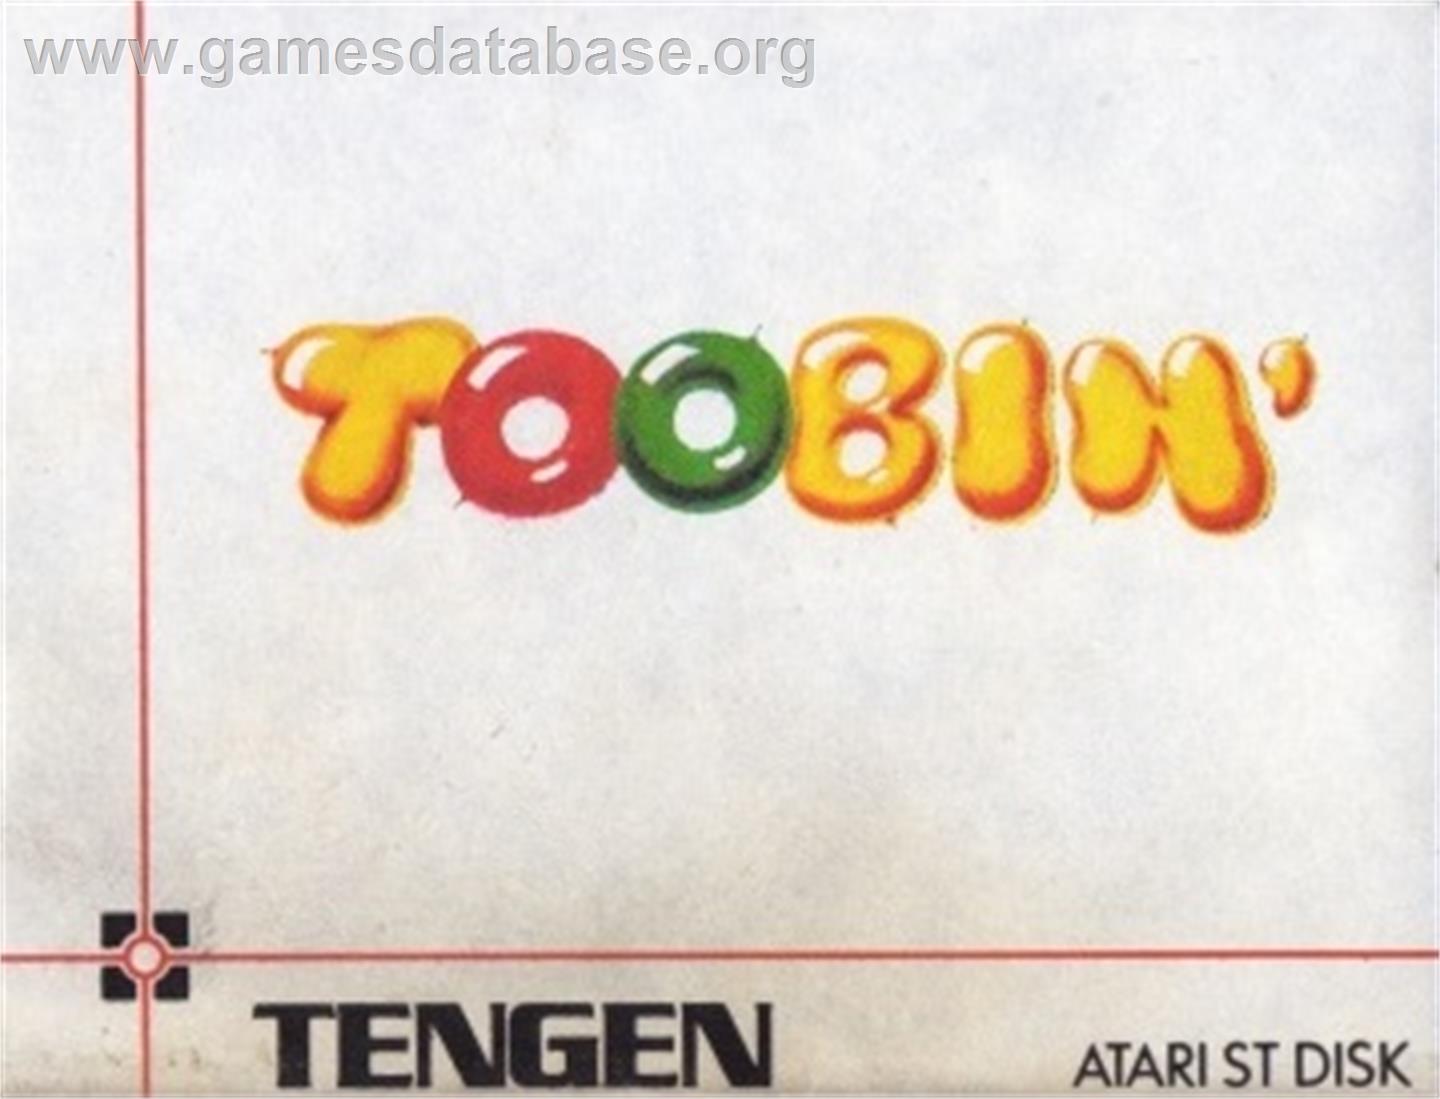 Toobin' - Atari ST - Artwork - Cartridge Top